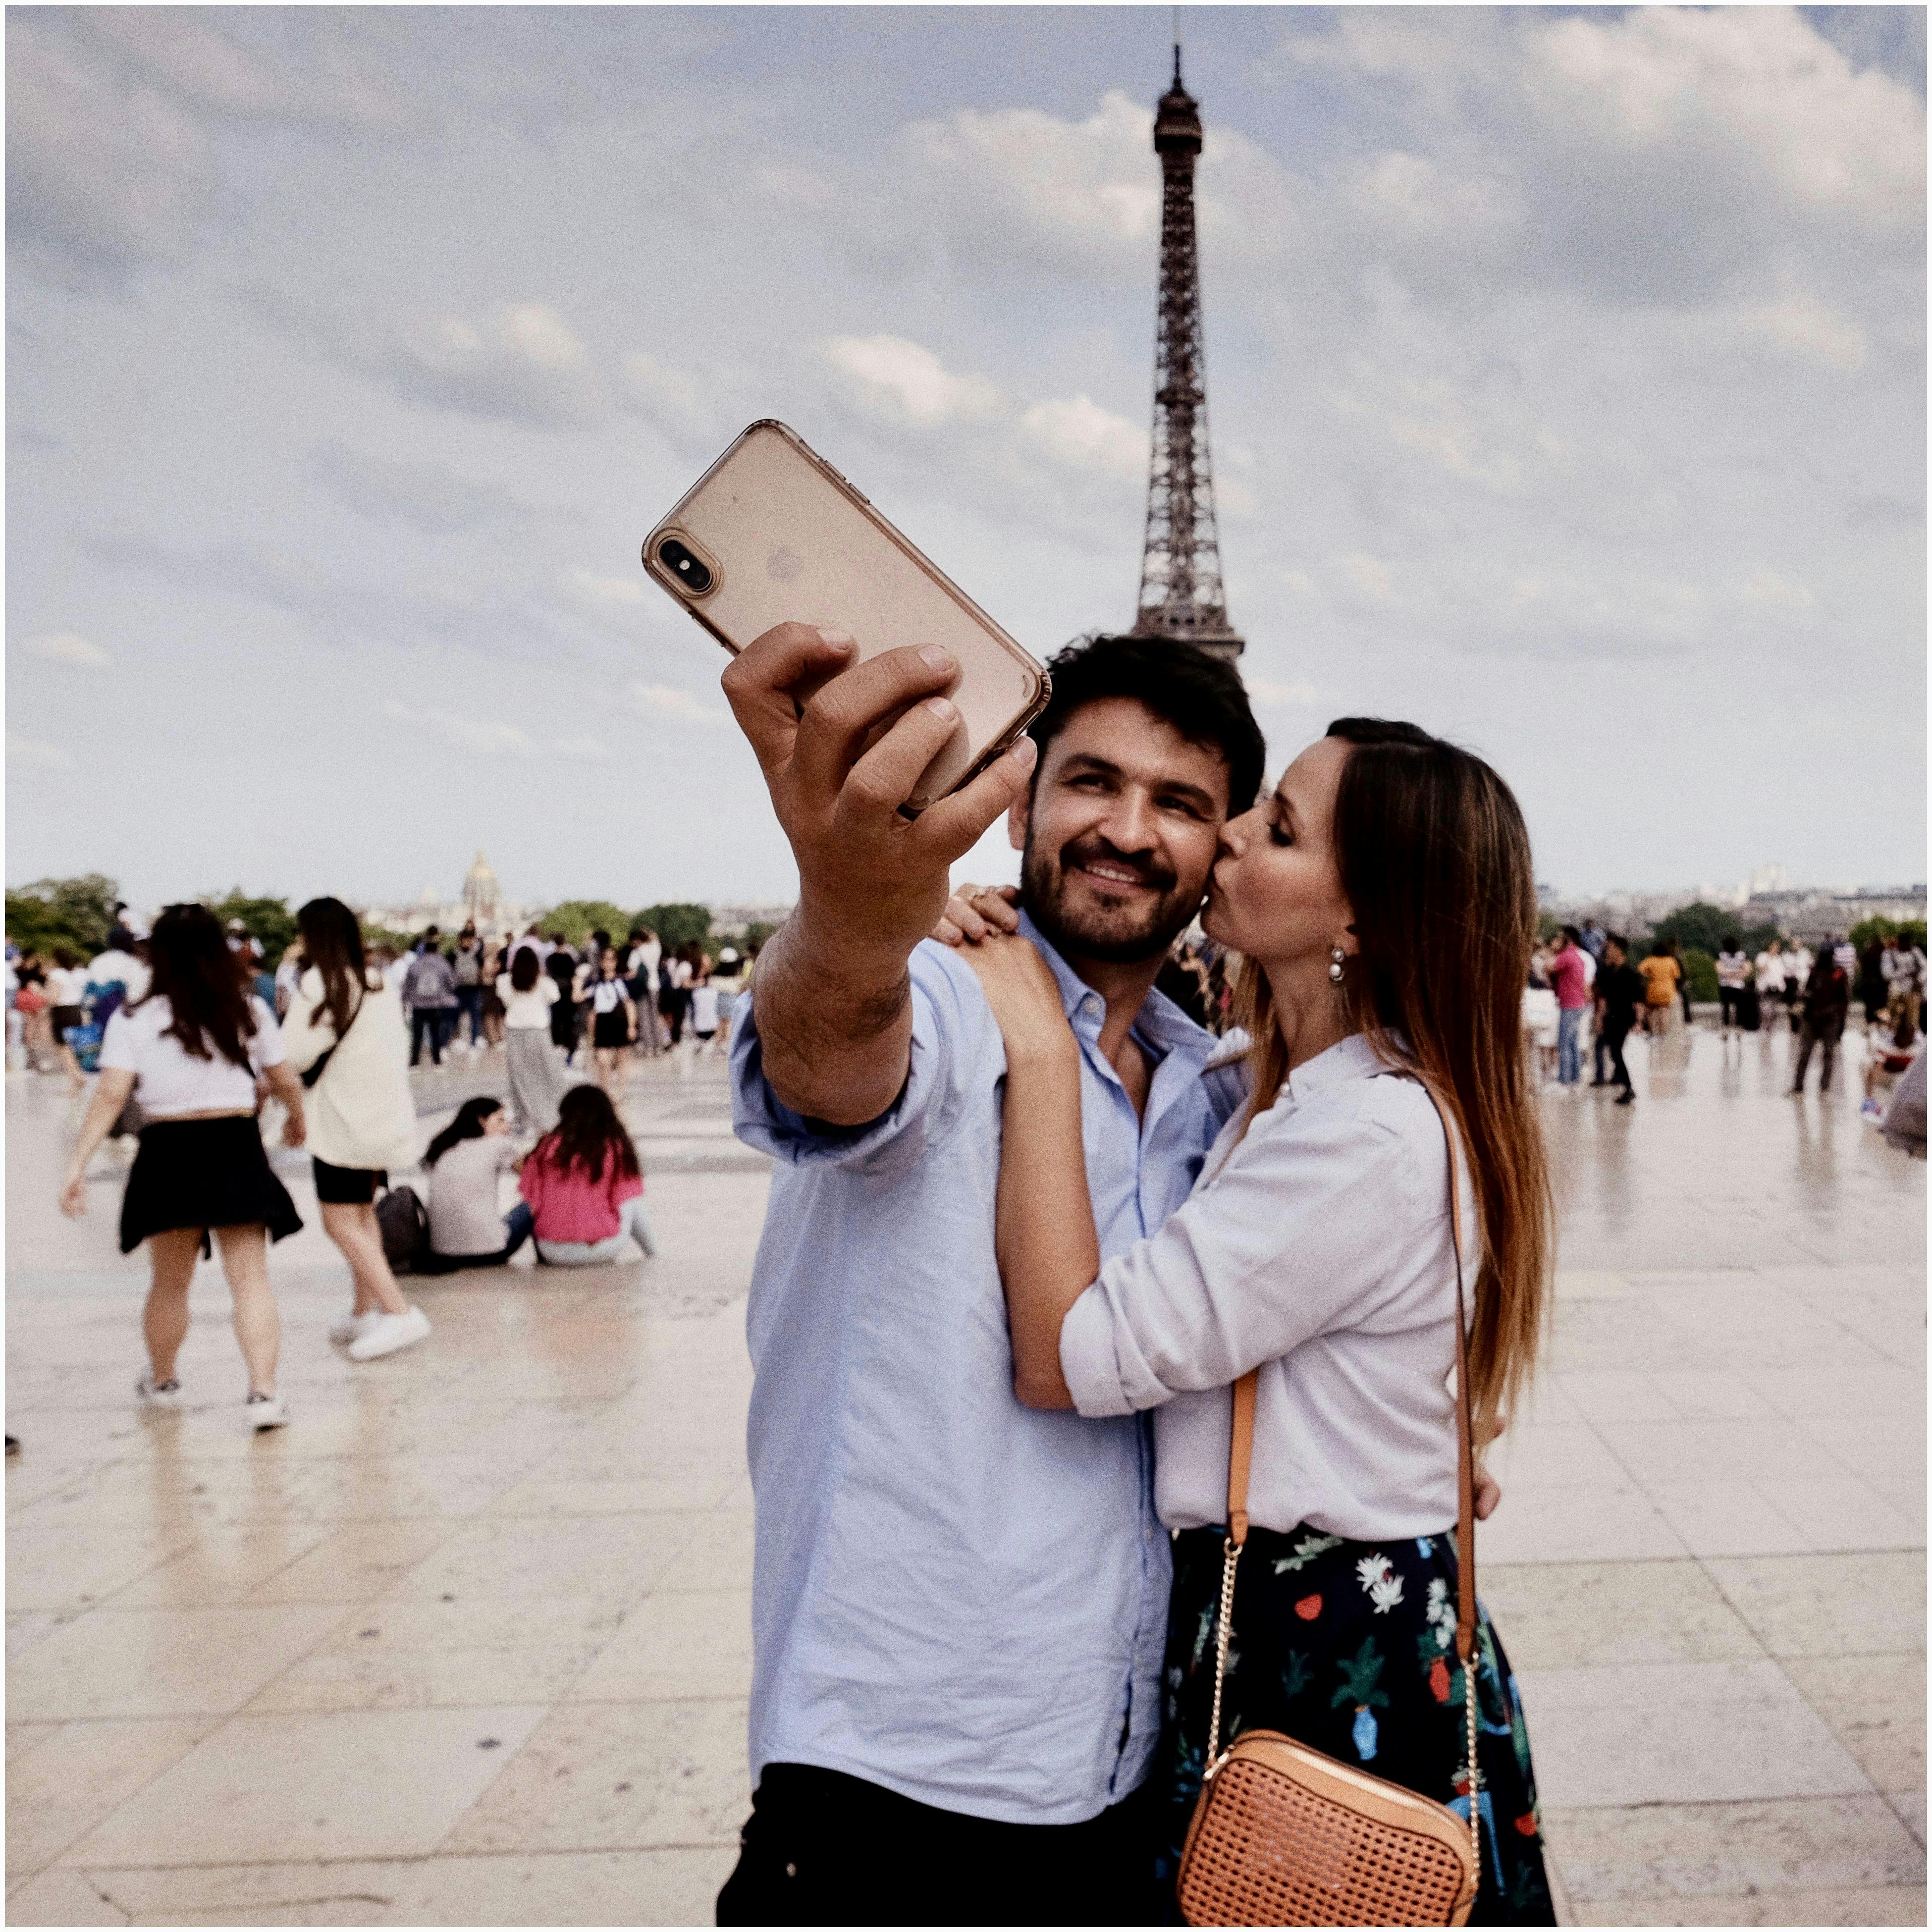 Photo De Couple étreignant Prenant Selfie Avec Une Foule De Gens Et La Tour Eiffel En Arrière Plan · Photo gratuite